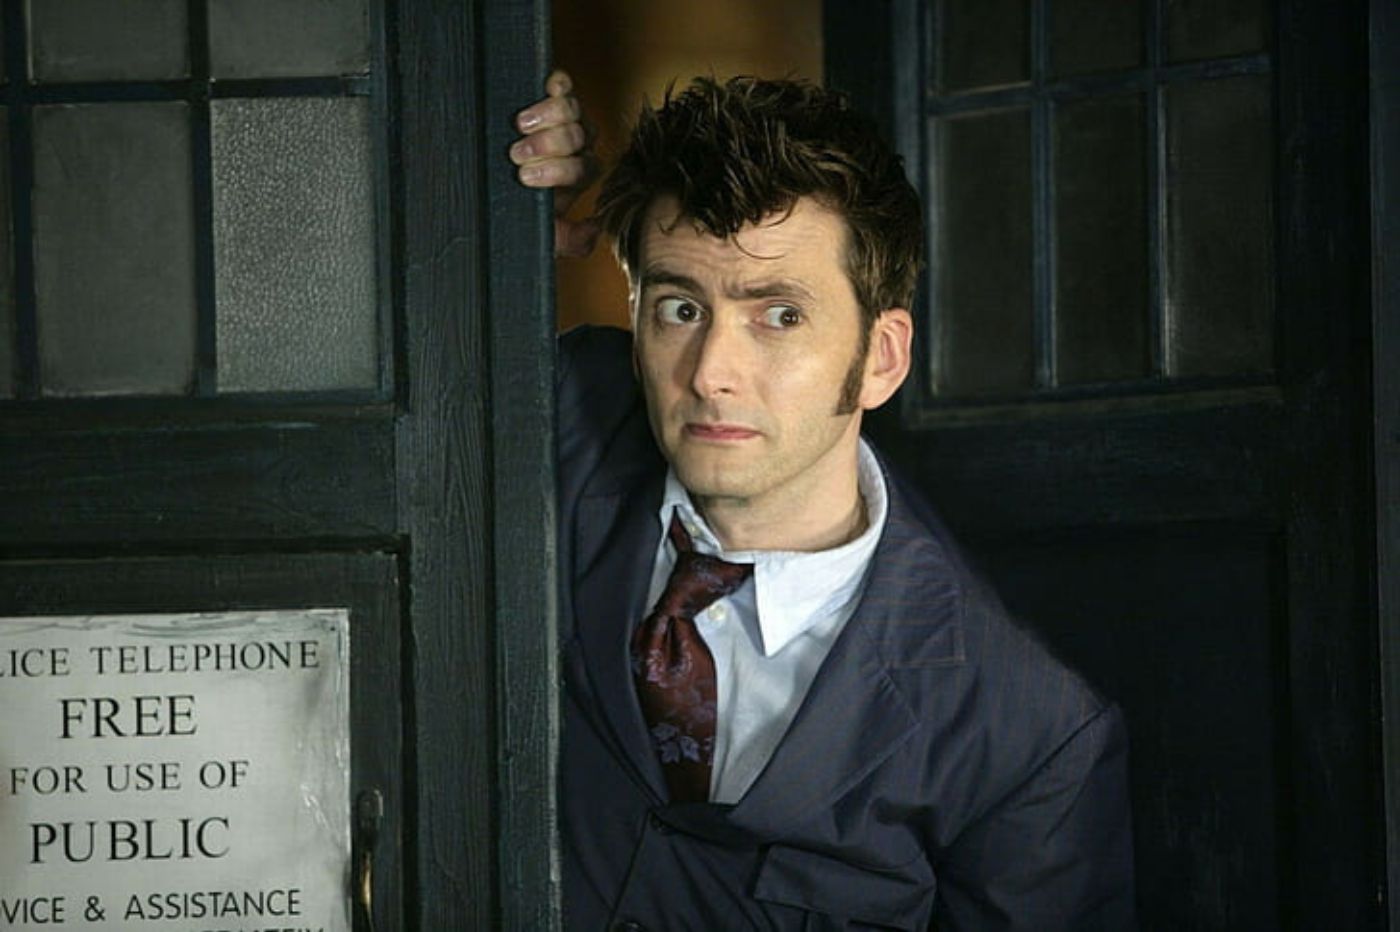 Doctor Who saison 13 : critique de la fin qui sauve (presque) tout